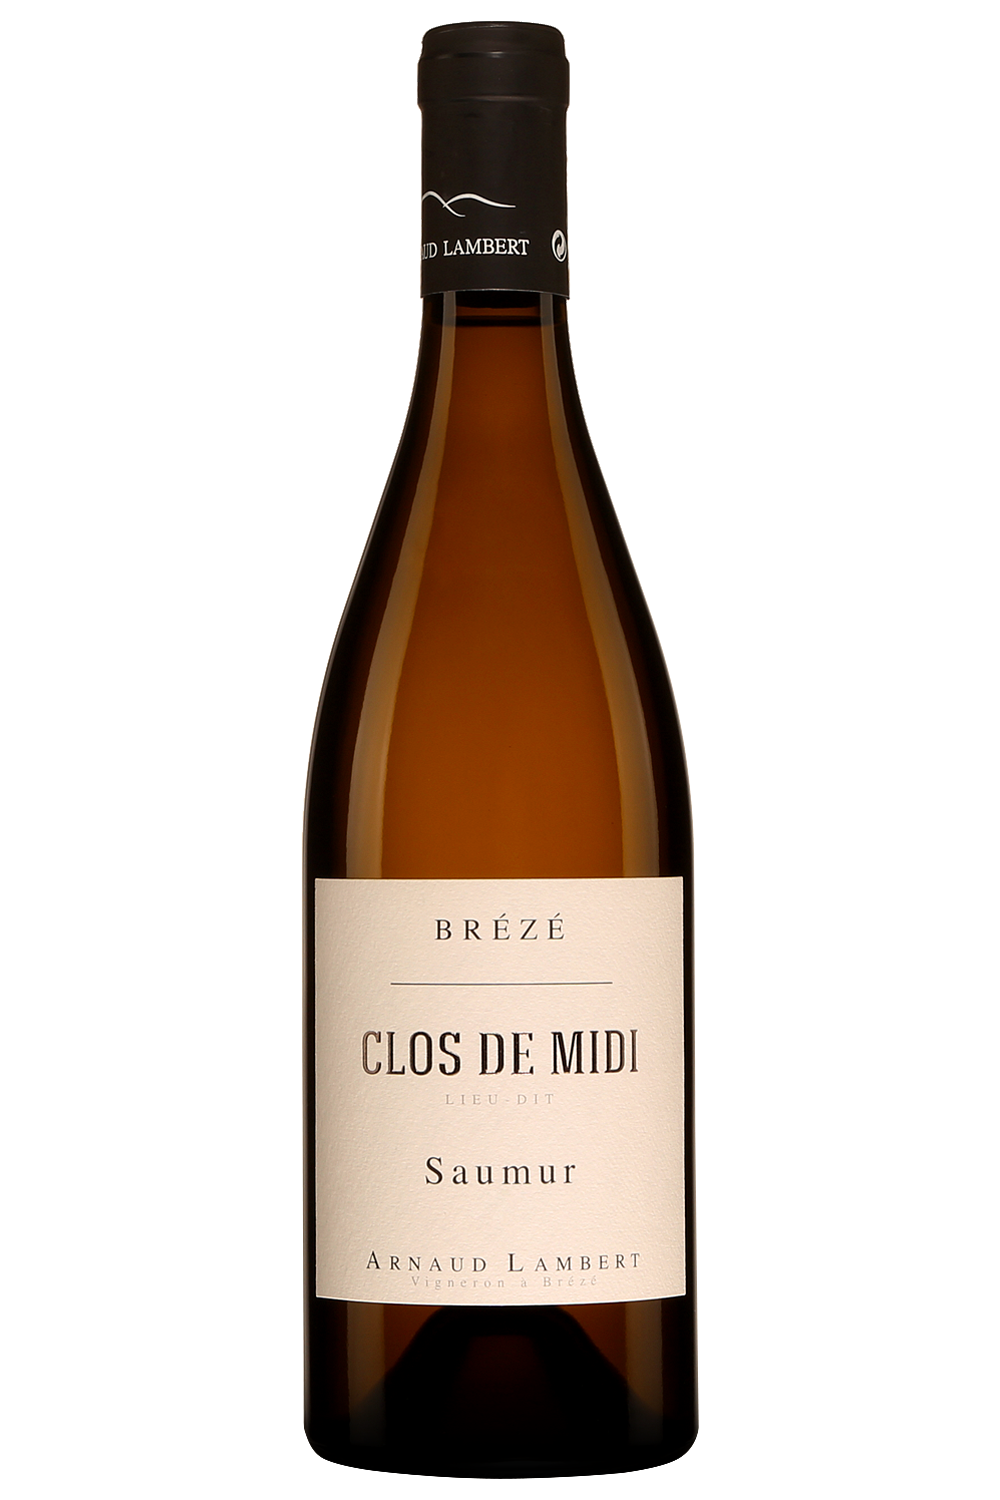 Arnaud Lambert Clos du Midi Saumur 2016, $22.15